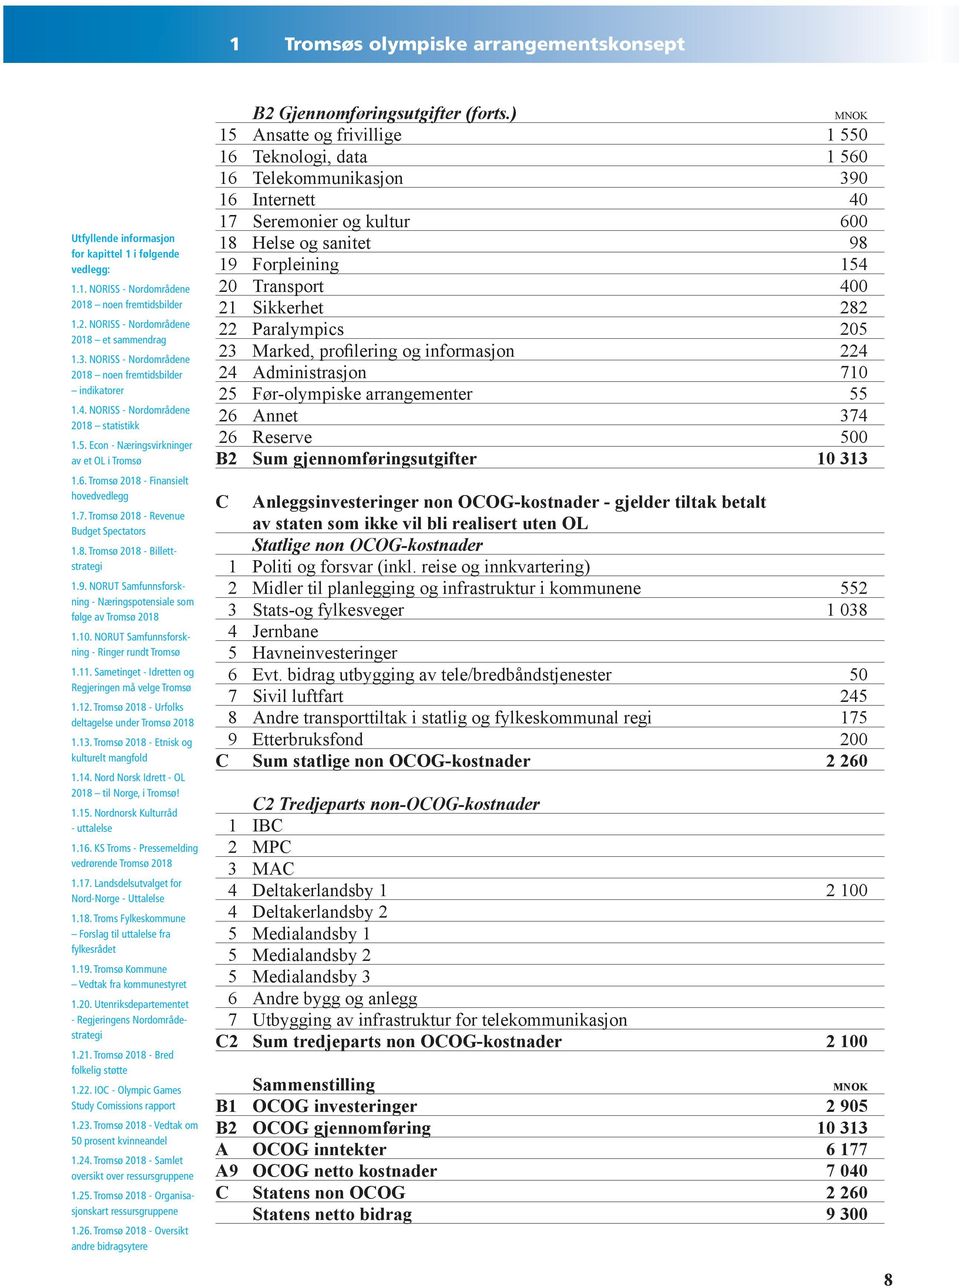 Tromsø 2018 - Revenue Budget Spectators 1.8. Tromsø 2018 - Billettstrategi 1.9. NORUT Samfunnsforskning - Næringspotensiale som følge av Tromsø 2018 1.10.